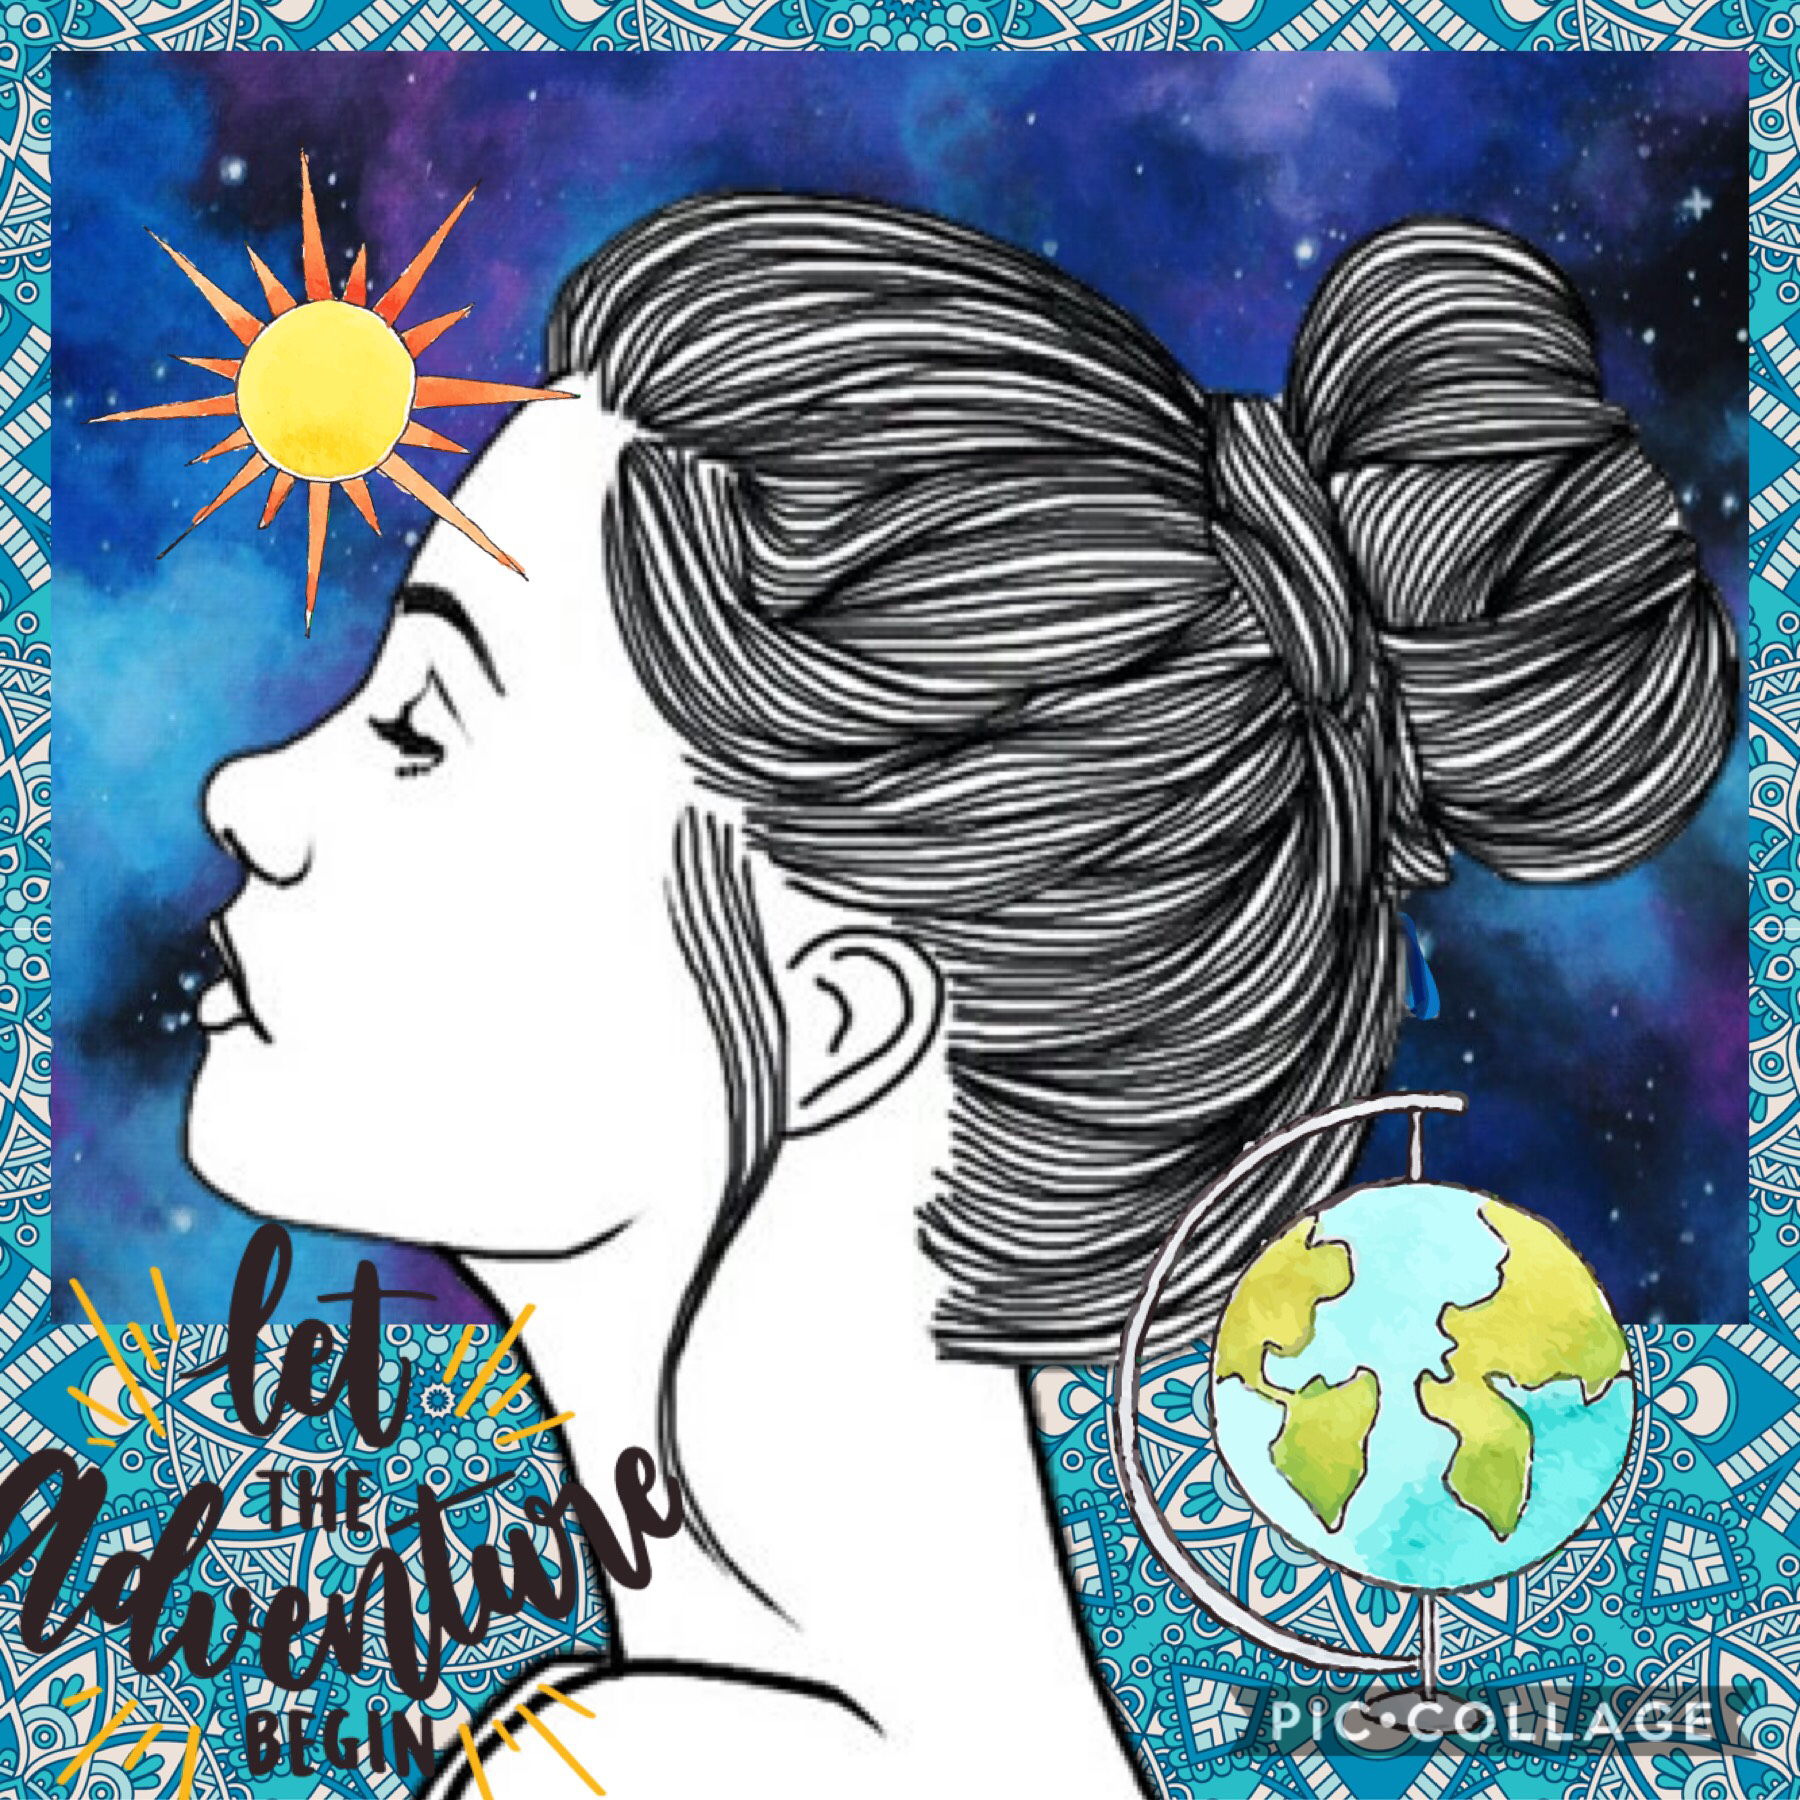 “Let the adventure begin”
#girl #tumblr #world #globe #sun #galaxy #mandala #let #the #adventure #begin